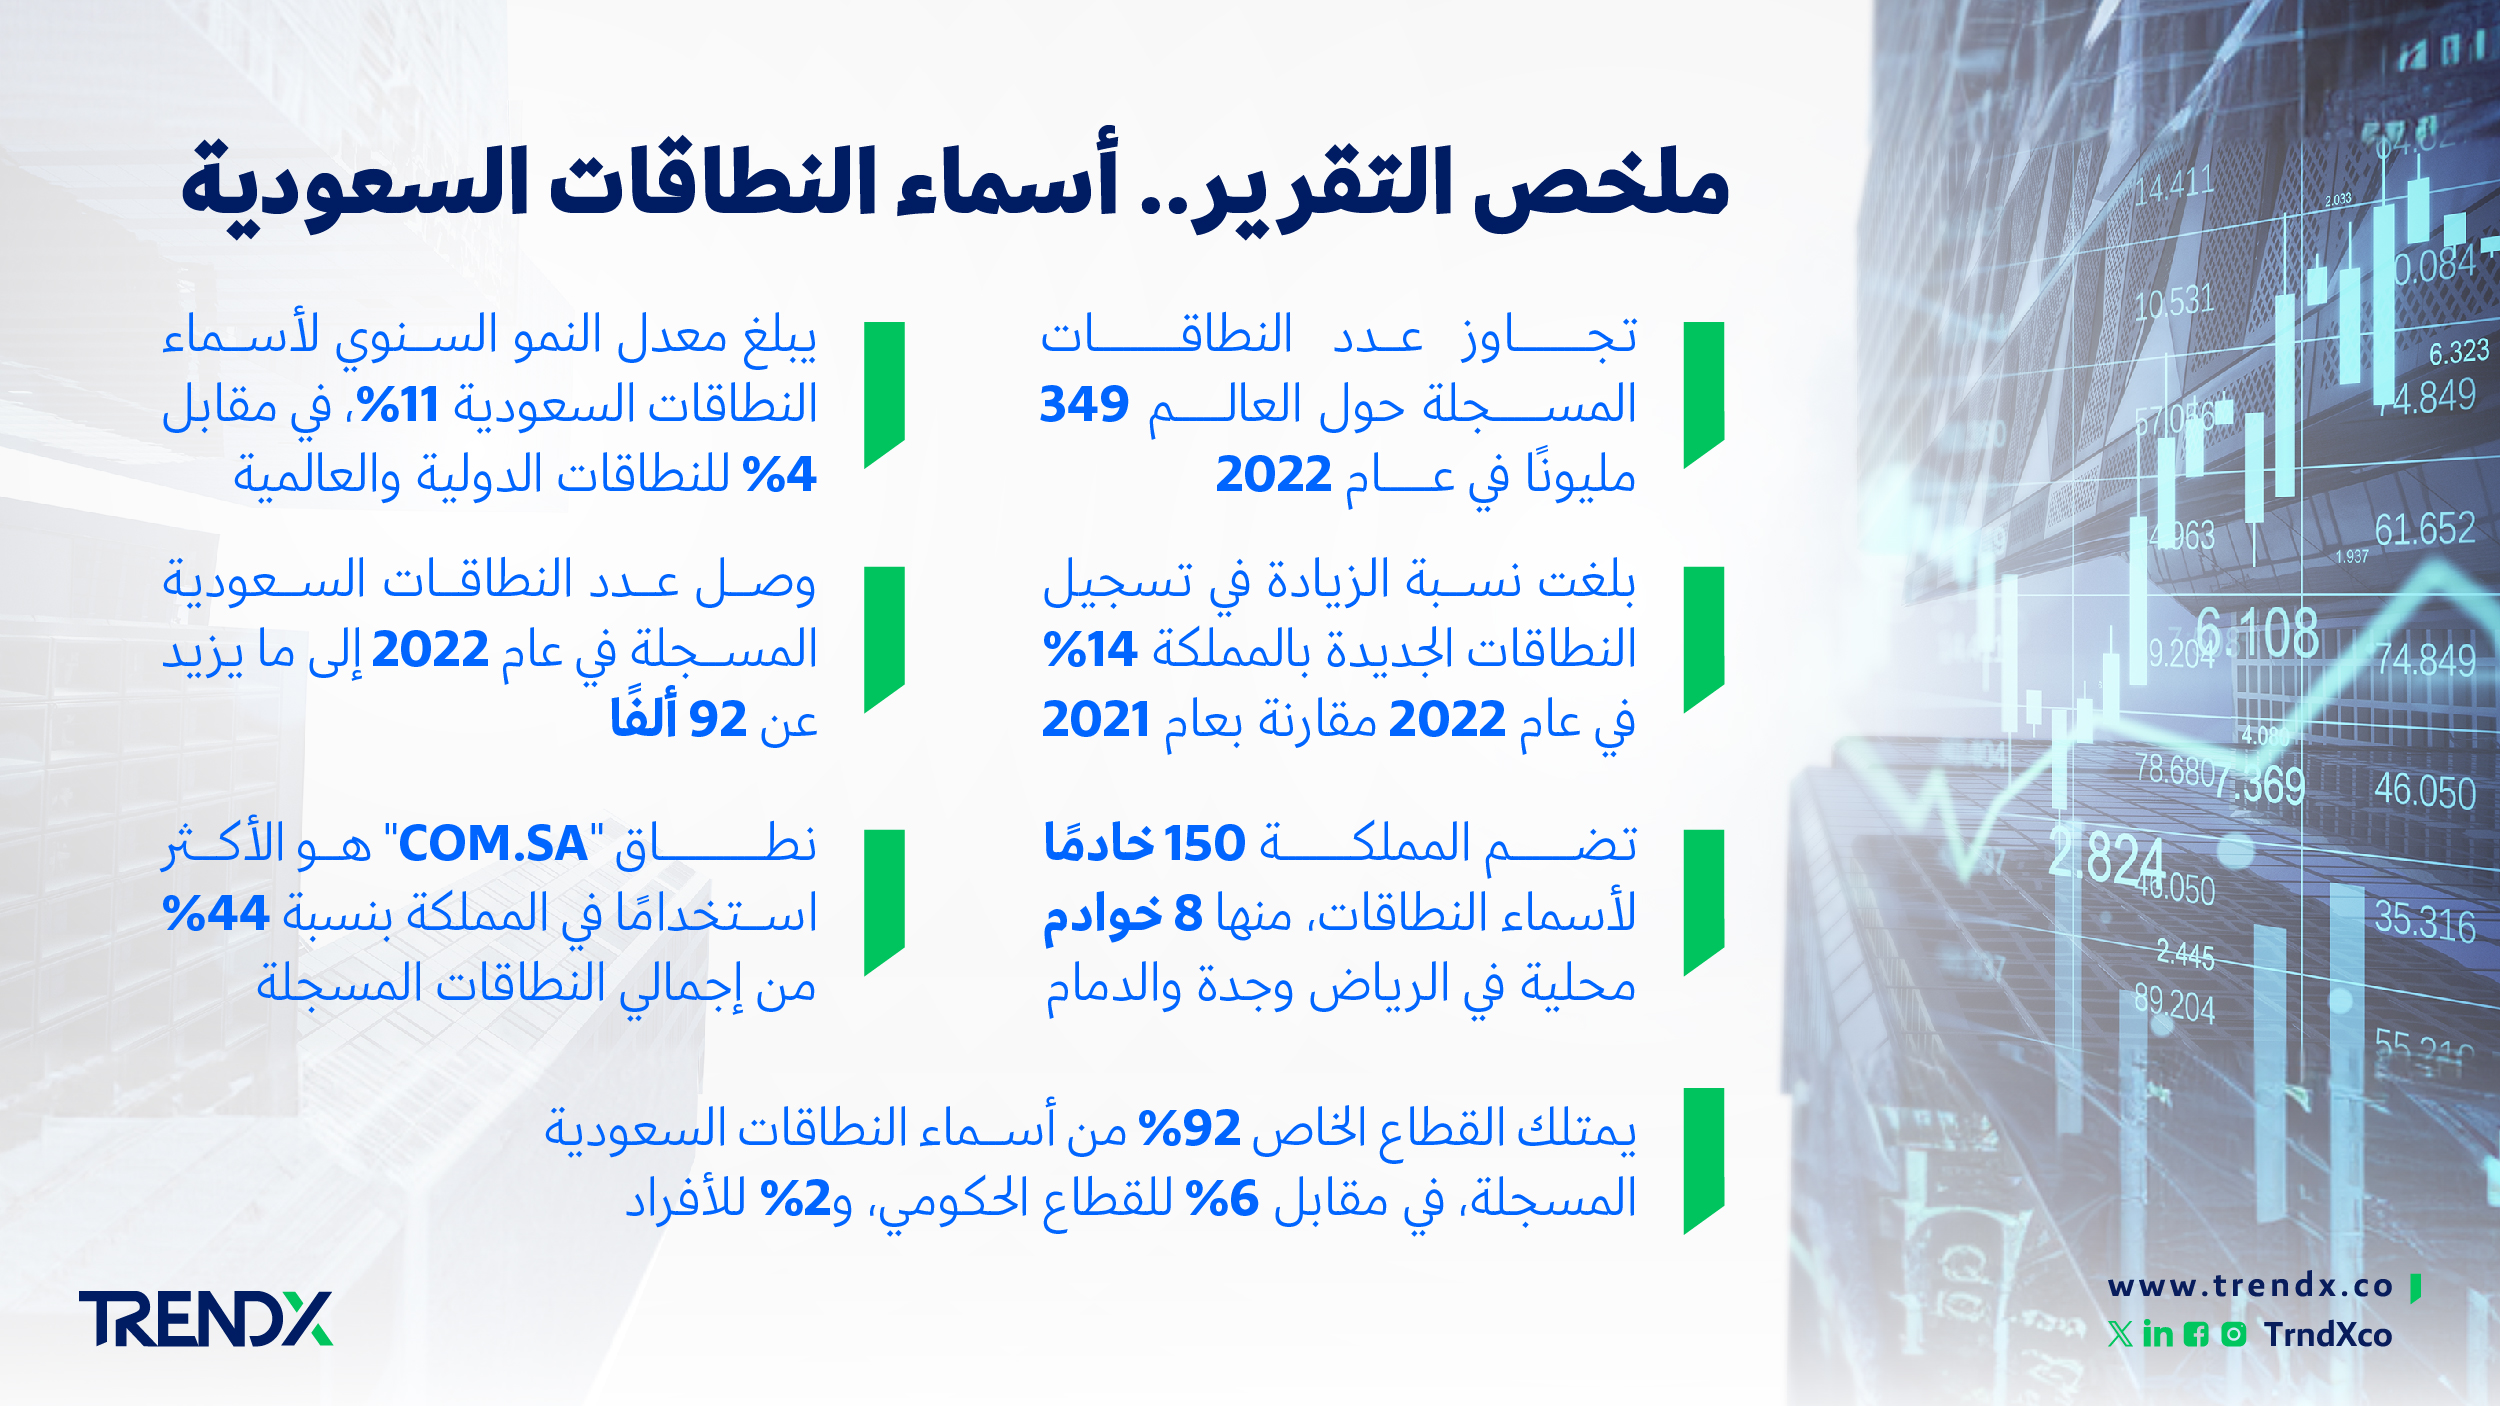 ملخص التقرير. أسماء النطاقات السعودية ثروات السعوديين في الفترة من عام 2000 إلى 2022 01